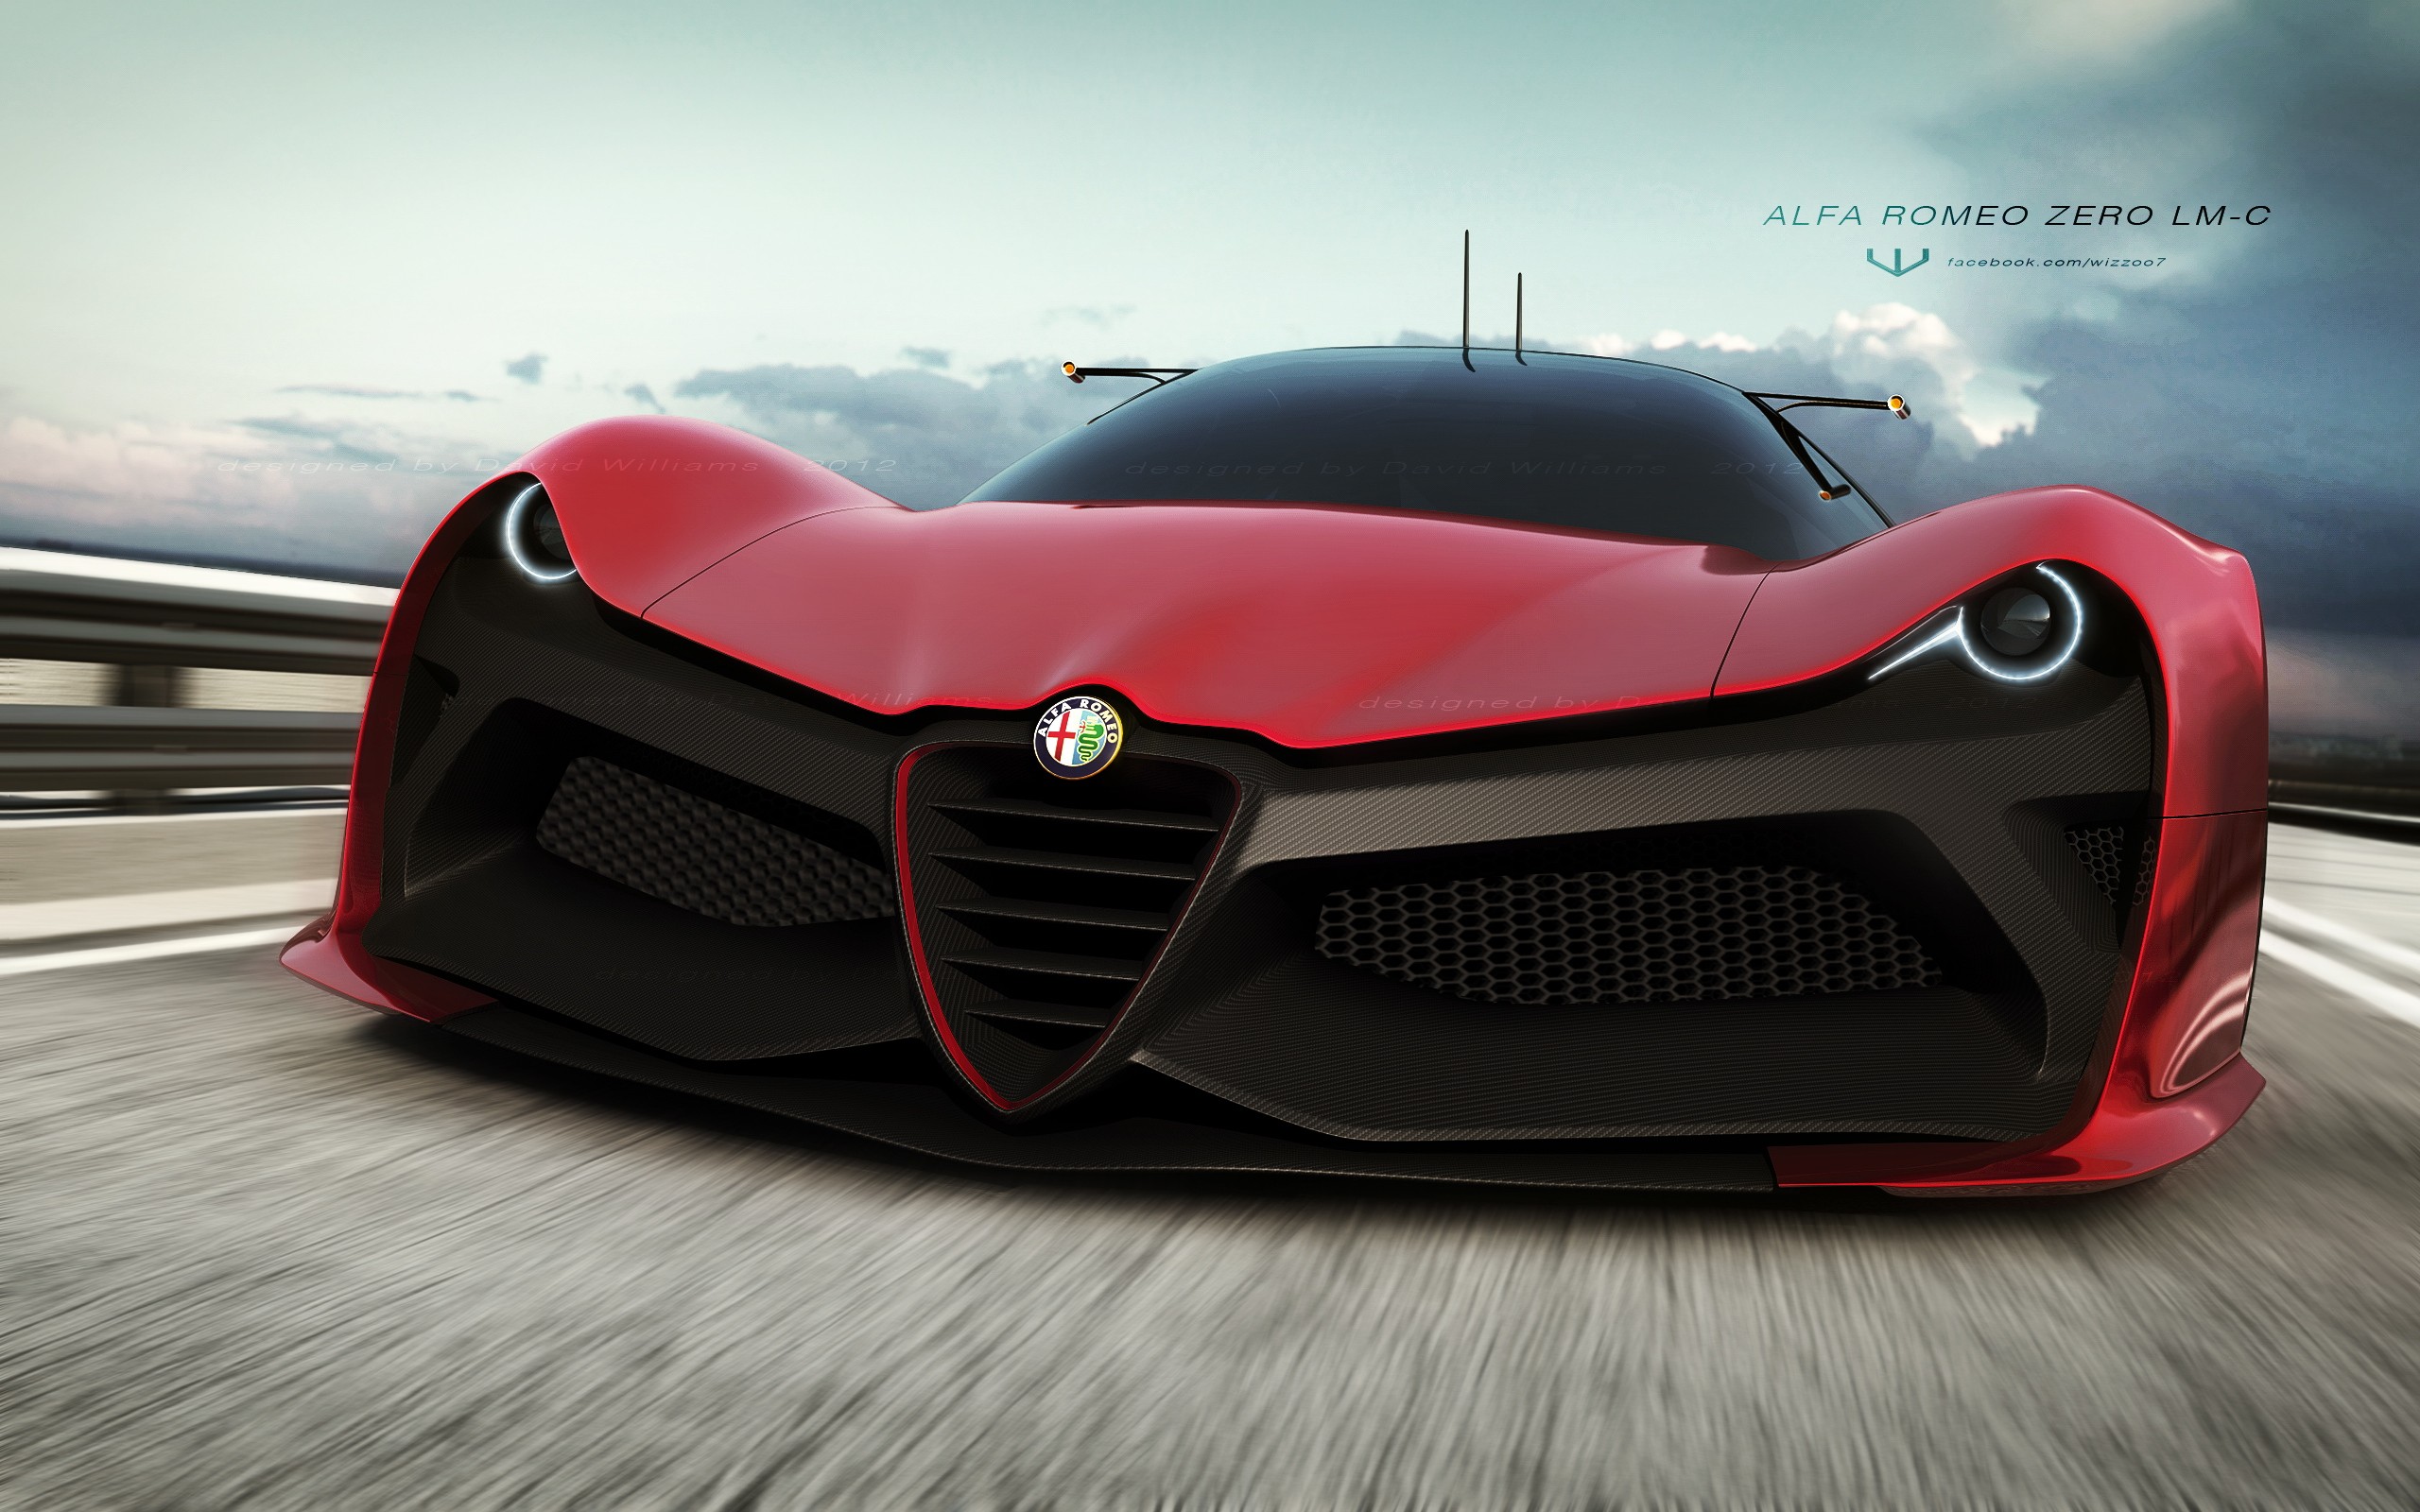 Laden Sie Alfa Romeo Zero Lm C HD-Desktop-Hintergründe herunter